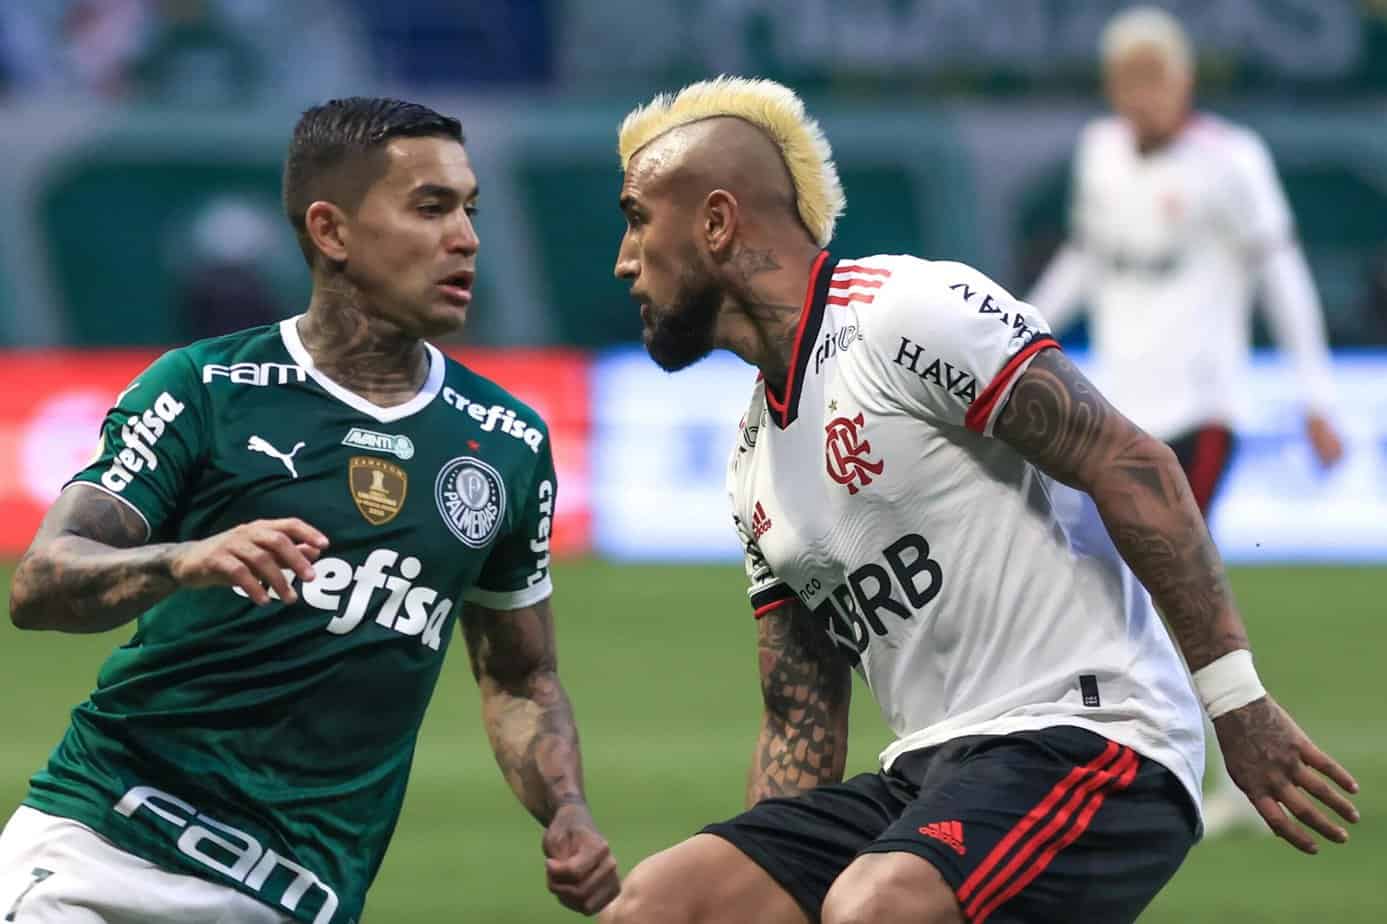 Palmeiras vs. Flamengo Preview and Free Pick